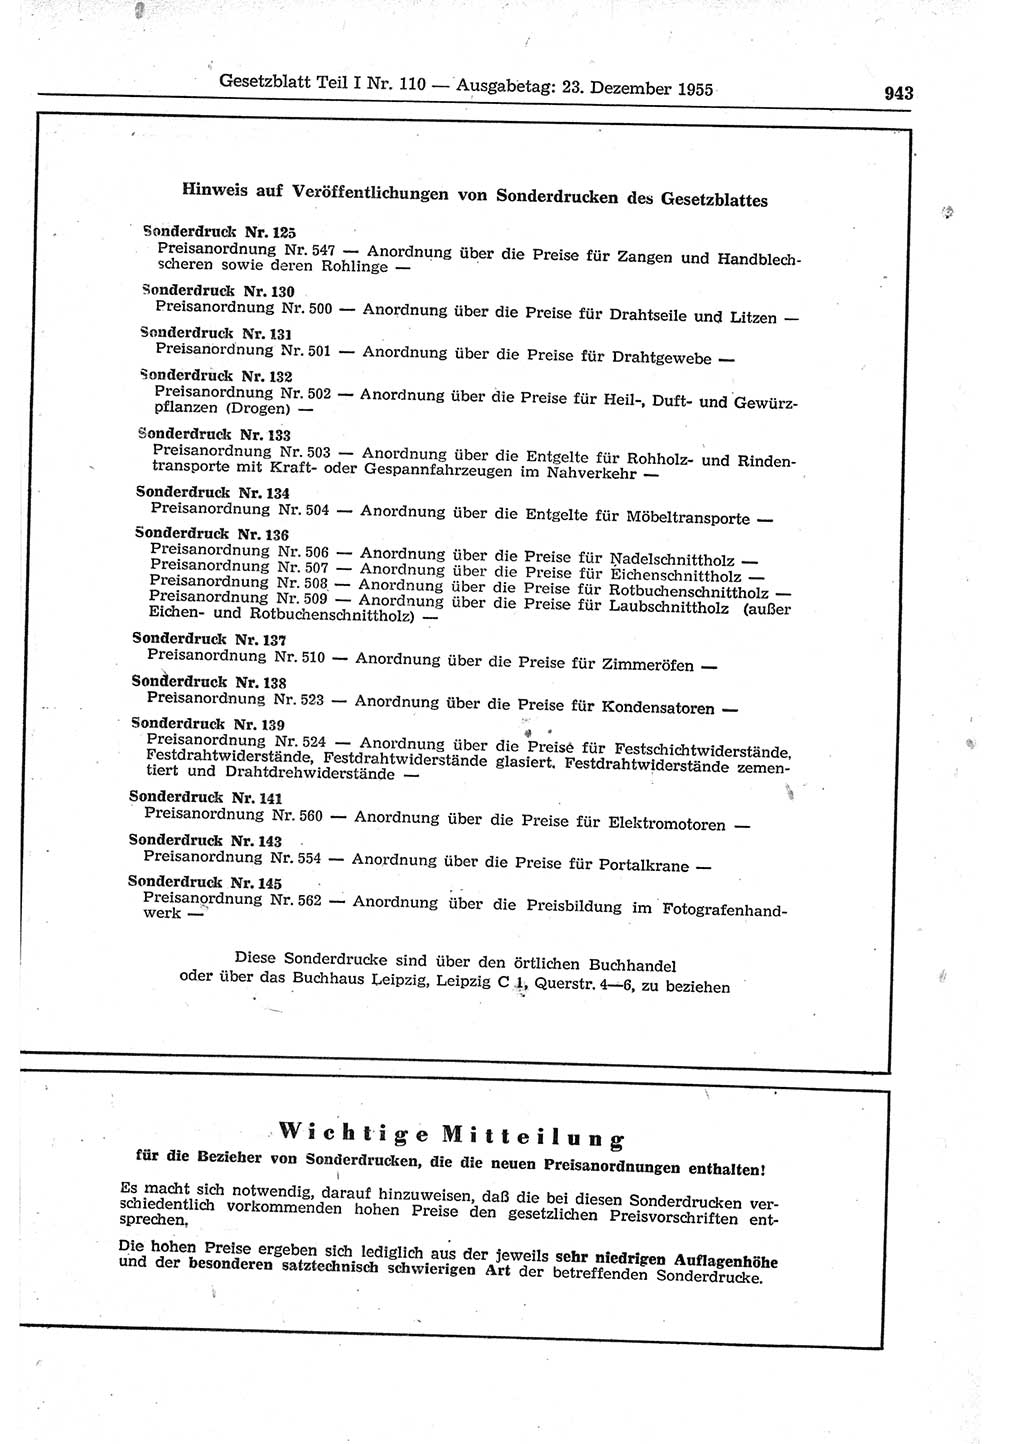 Gesetzblatt (GBl.) der Deutschen Demokratischen Republik (DDR) Teil Ⅰ 1955, Seite 943 (GBl. DDR Ⅰ 1955, S. 943)